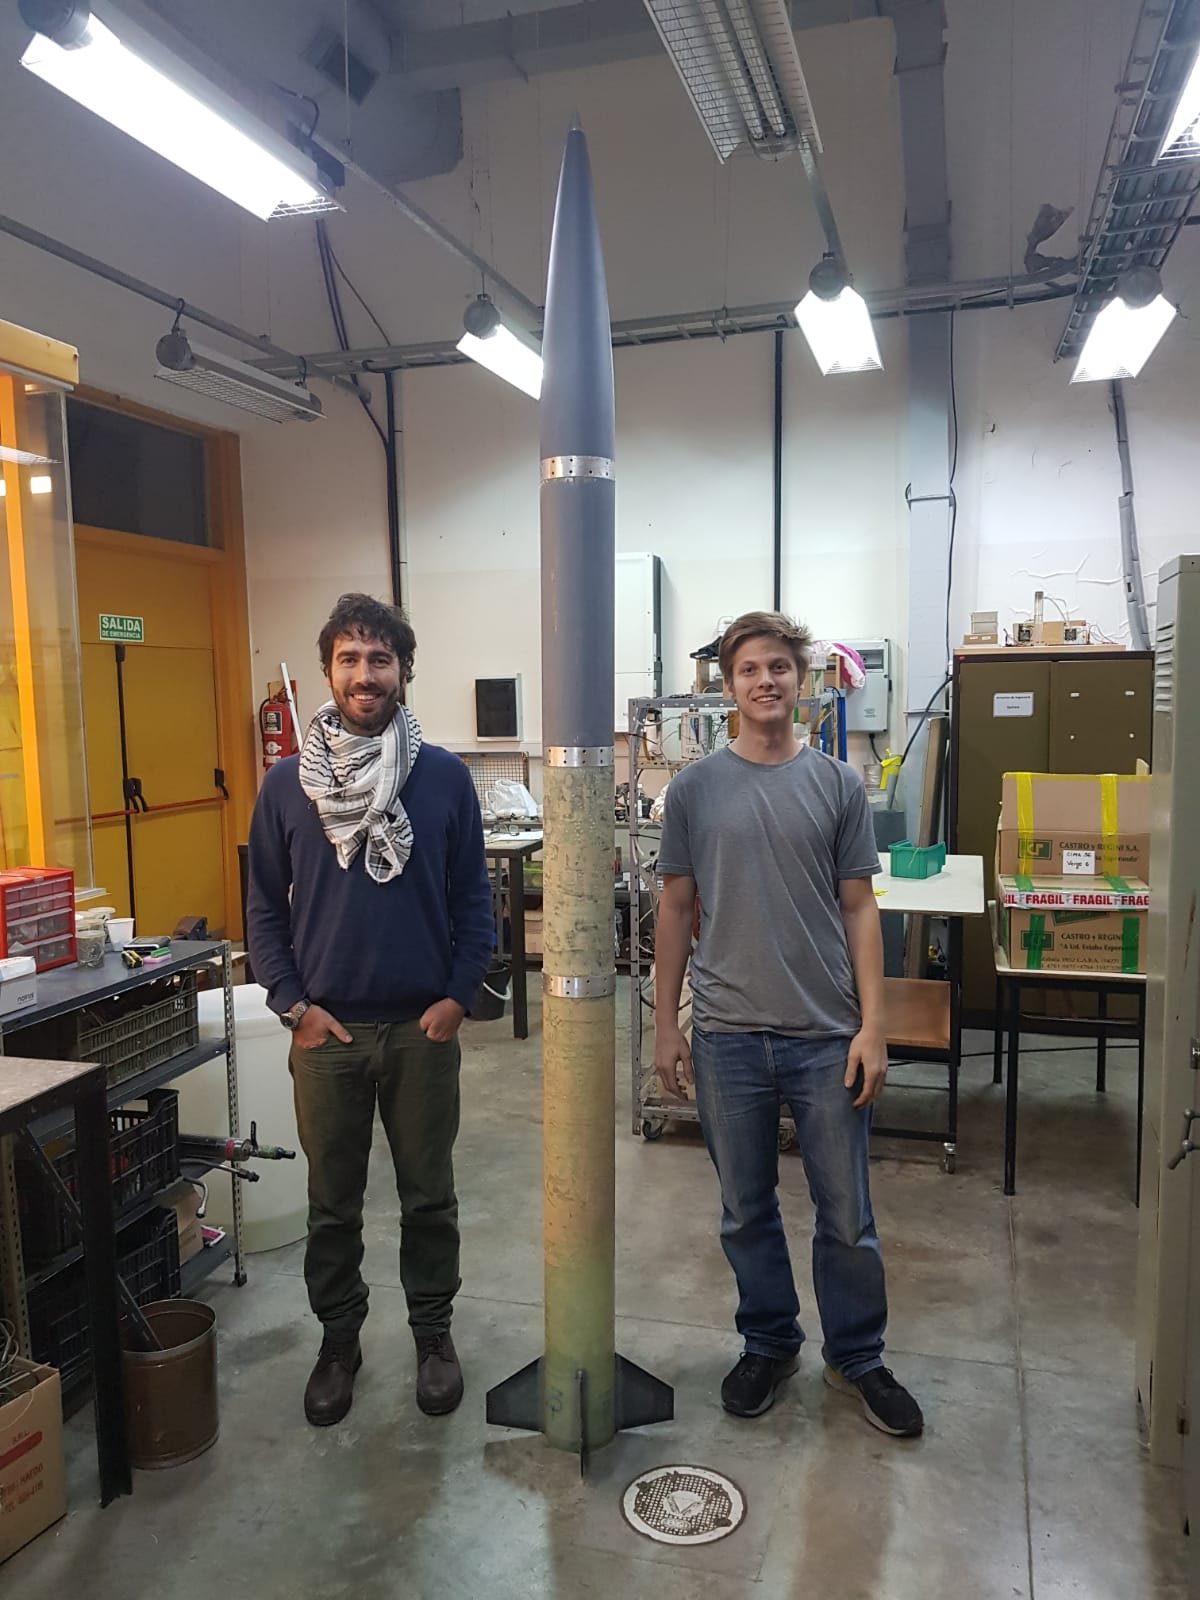 El modelo del cohete en el taller, mientras era construido